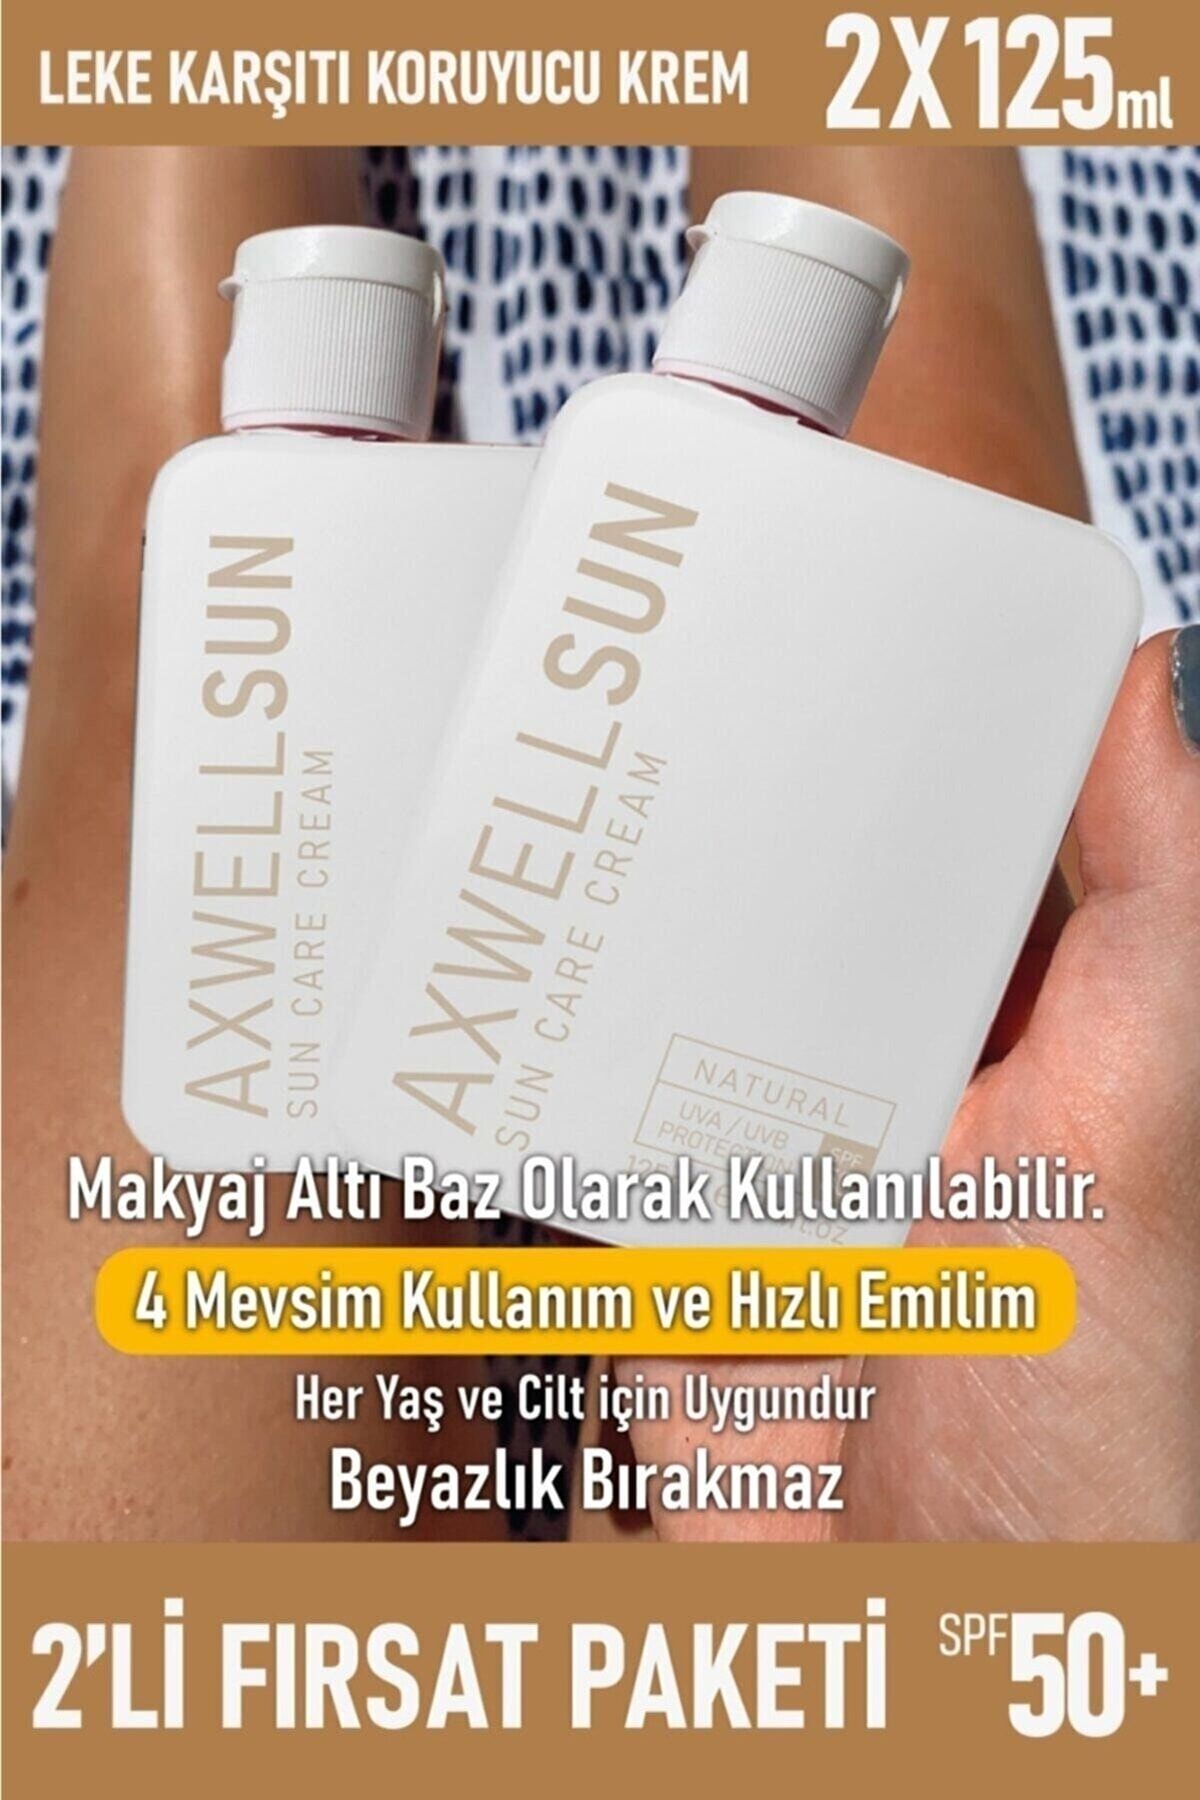 AXWELL Premium Sun Care Cream Leke Karşıtı Güneş Koruyucu Krem Spf50 + 125 Ml 2 Adet